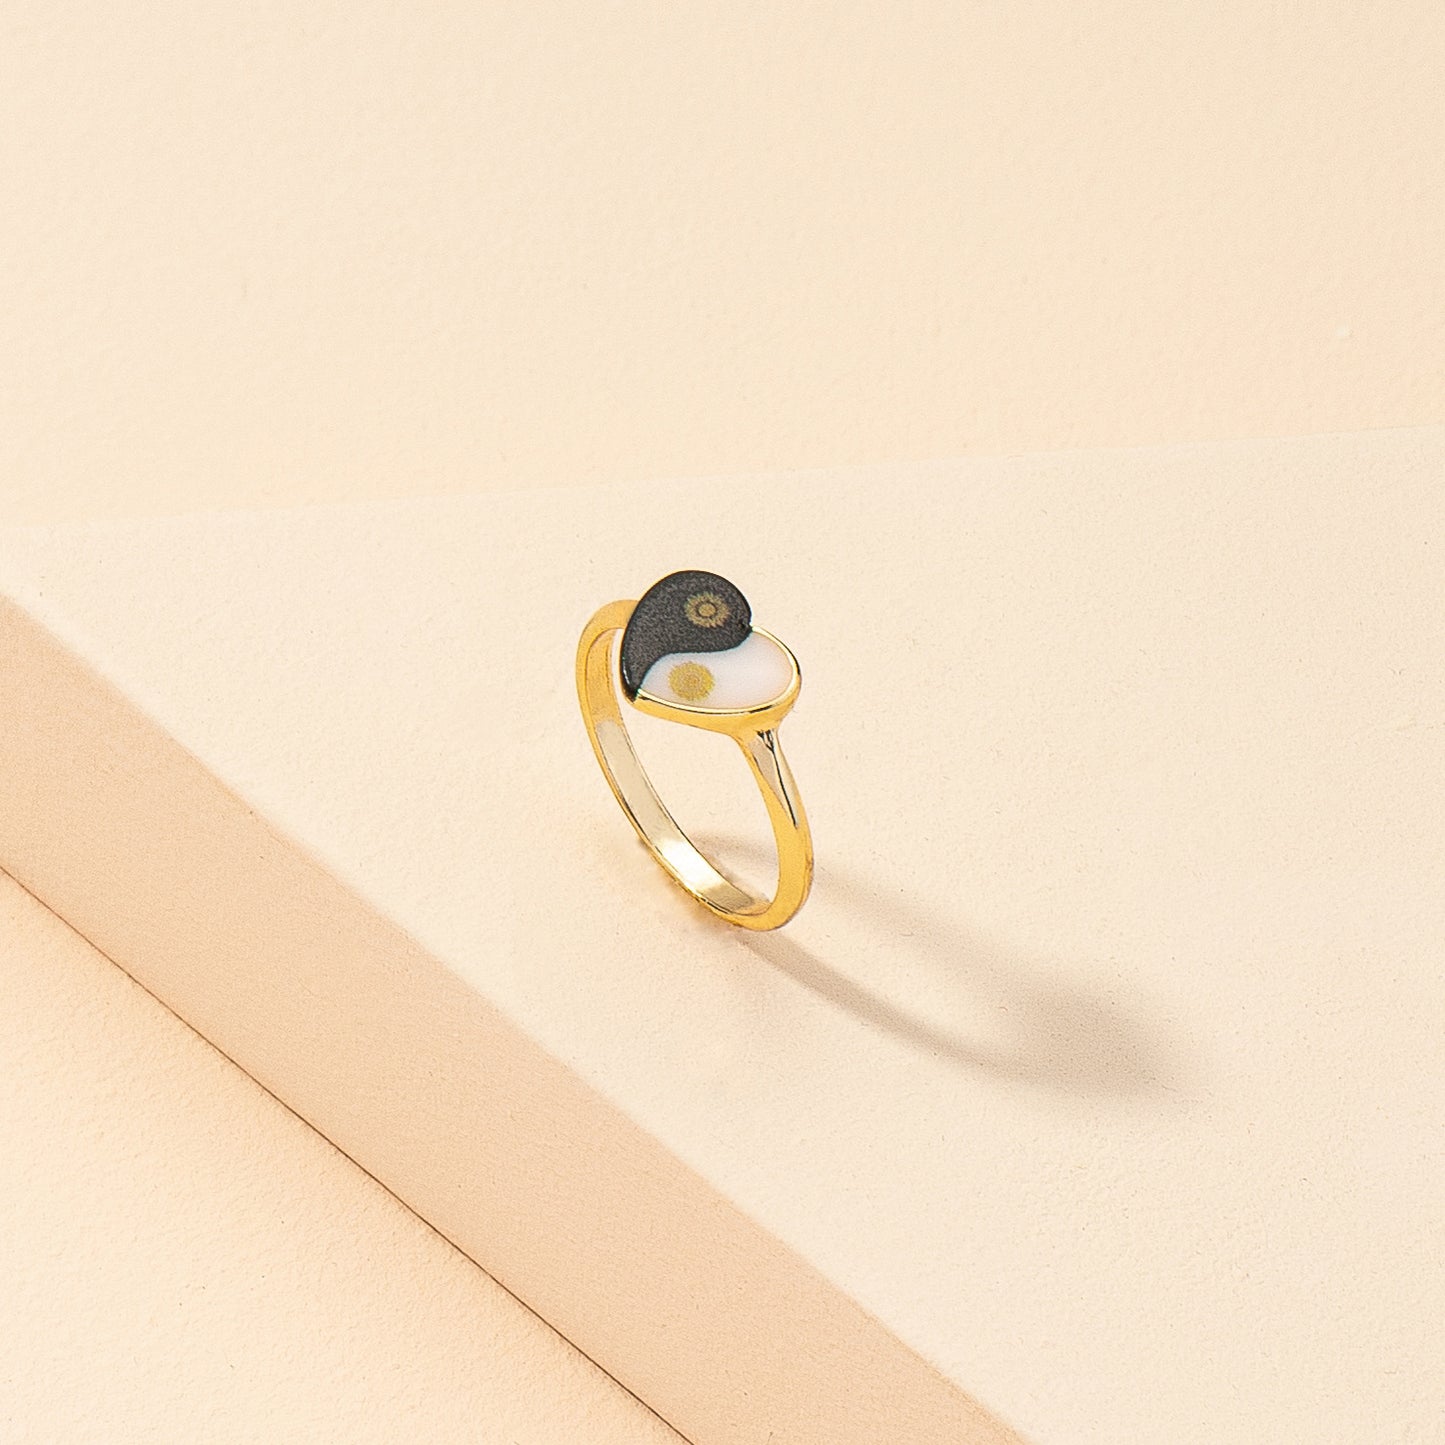 Europe & America's Favorite Heart Print Ring: Gold Geometric Cross-Border Instagram Ring for Women